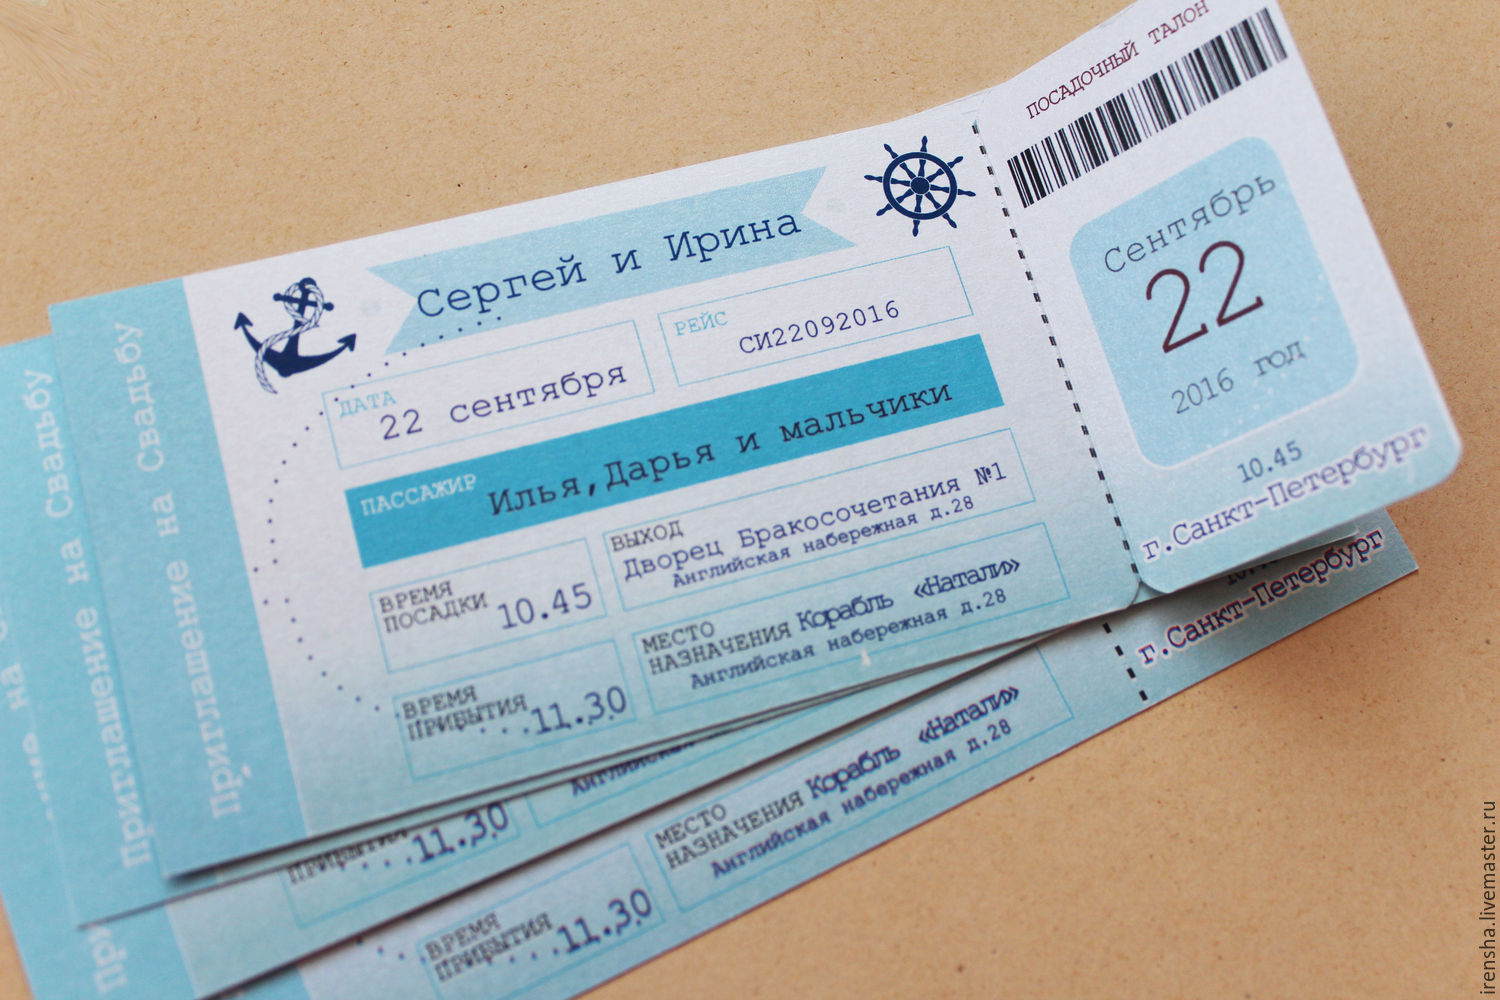 Шаблон пригласительных билет на самолет рейс грозный новосибирск авиабилеты прямой ближайший день